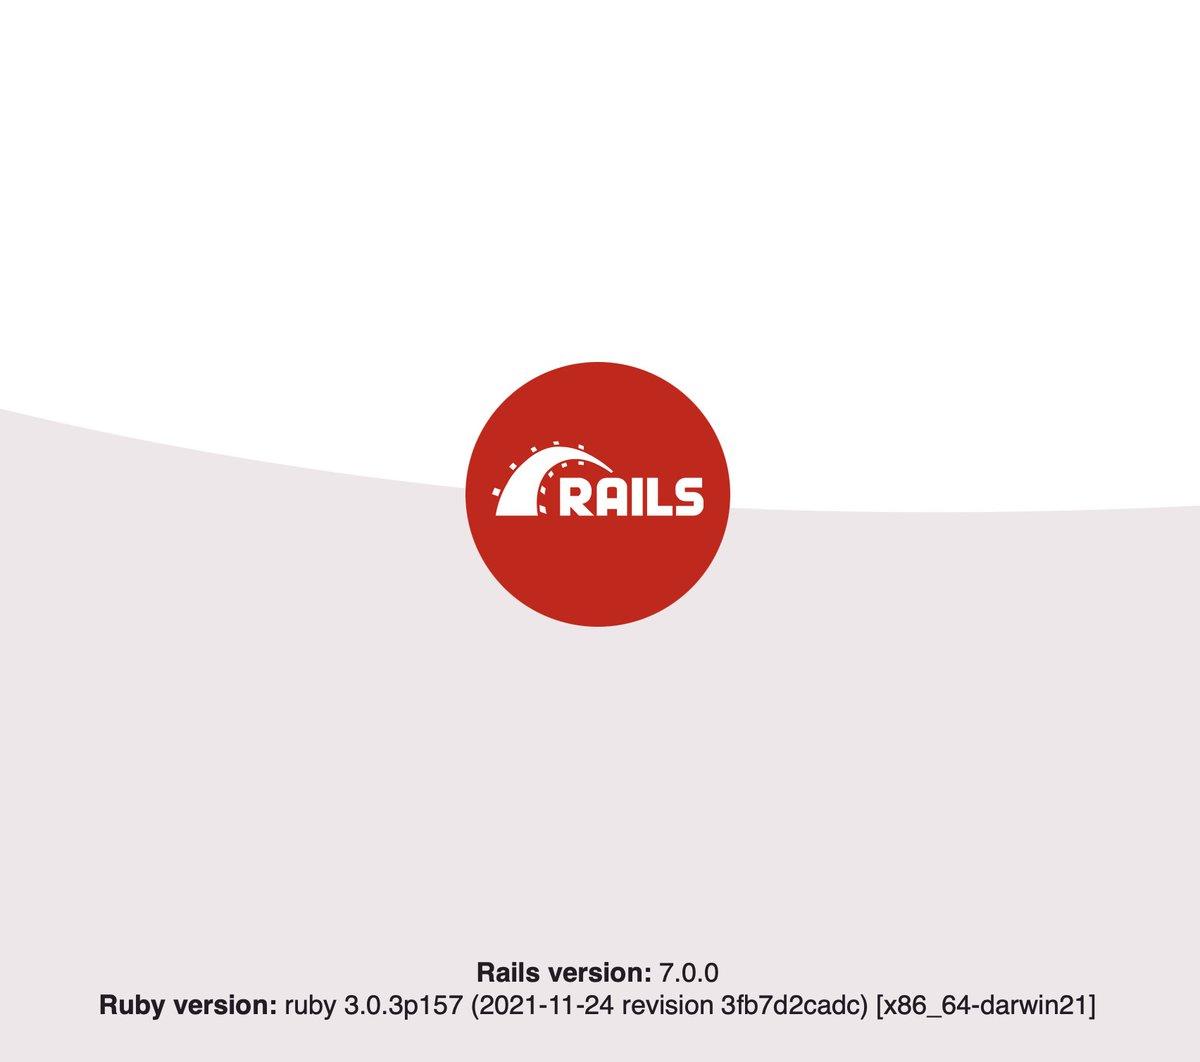 Rails welcome screen